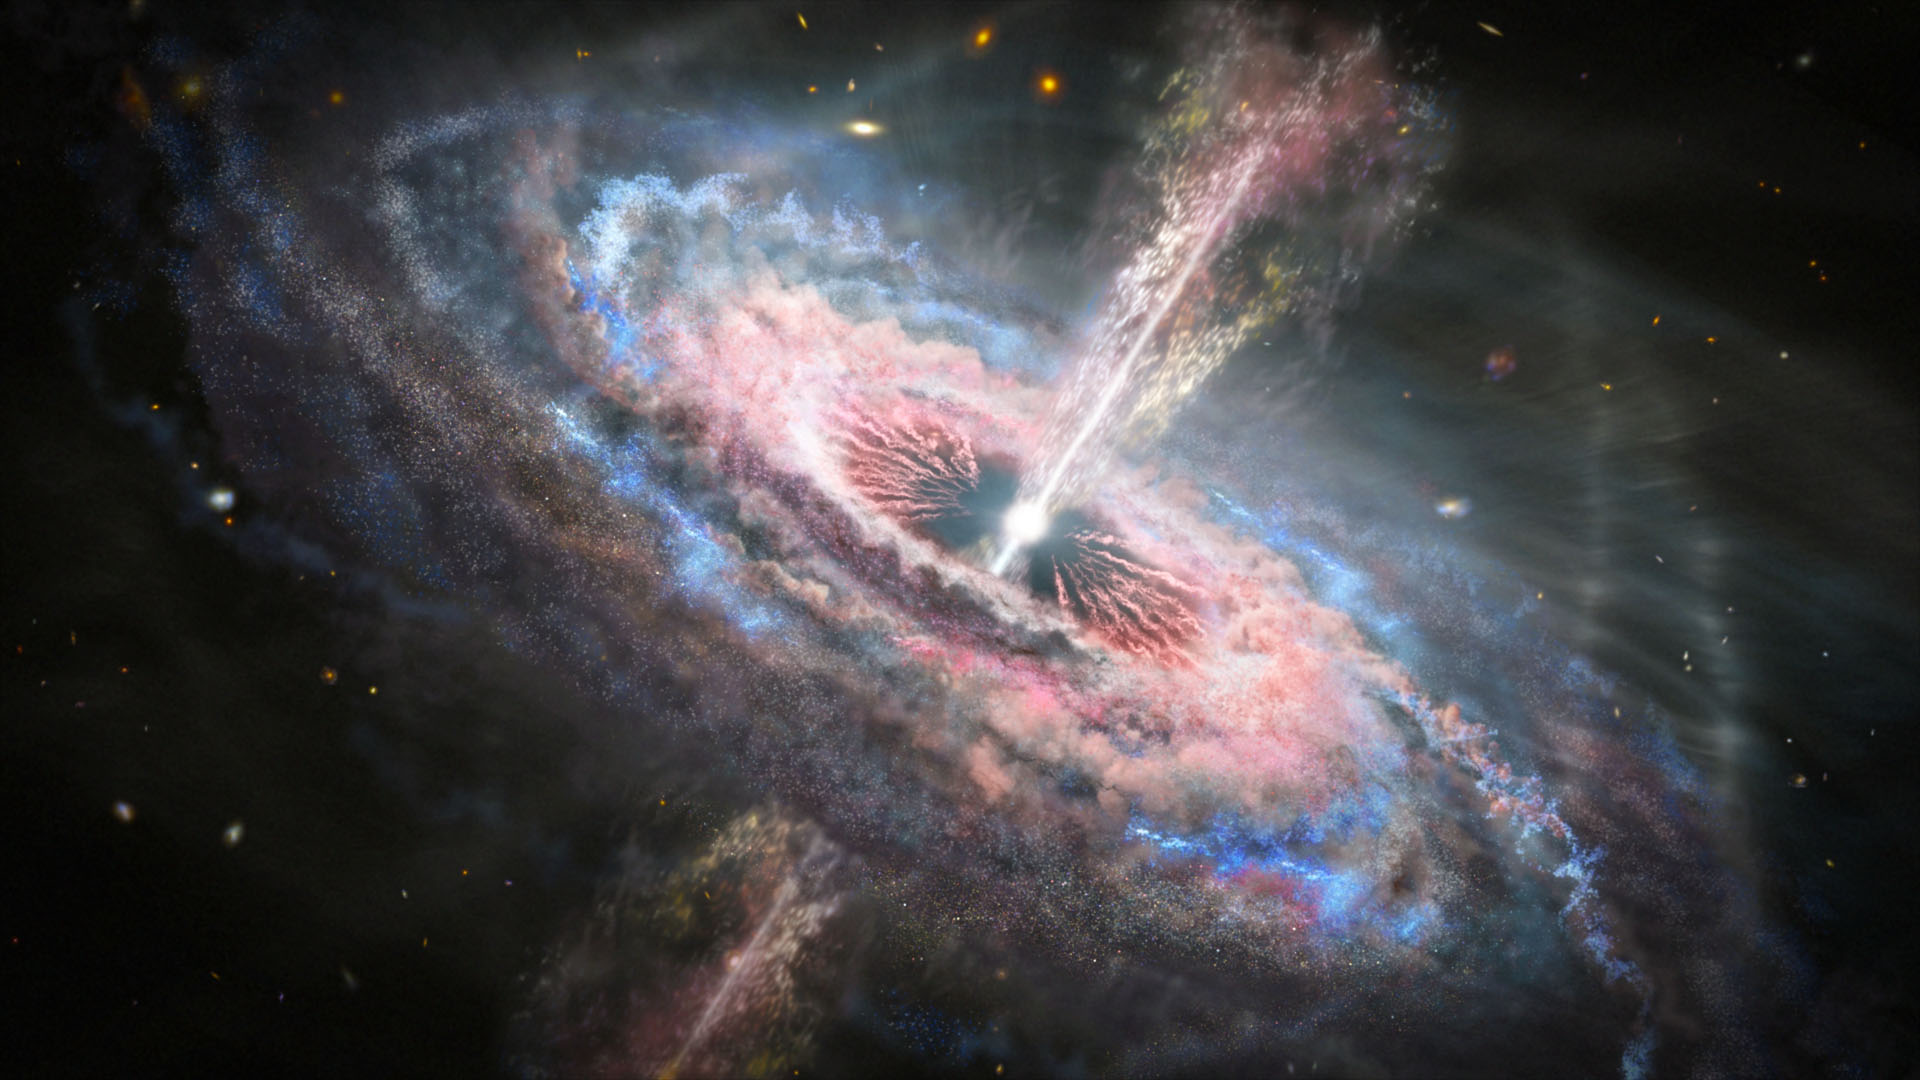 Illustrazione di una galassia con un quasar, un buco nero supermassiccio attivo, luminoso e distante, al centro